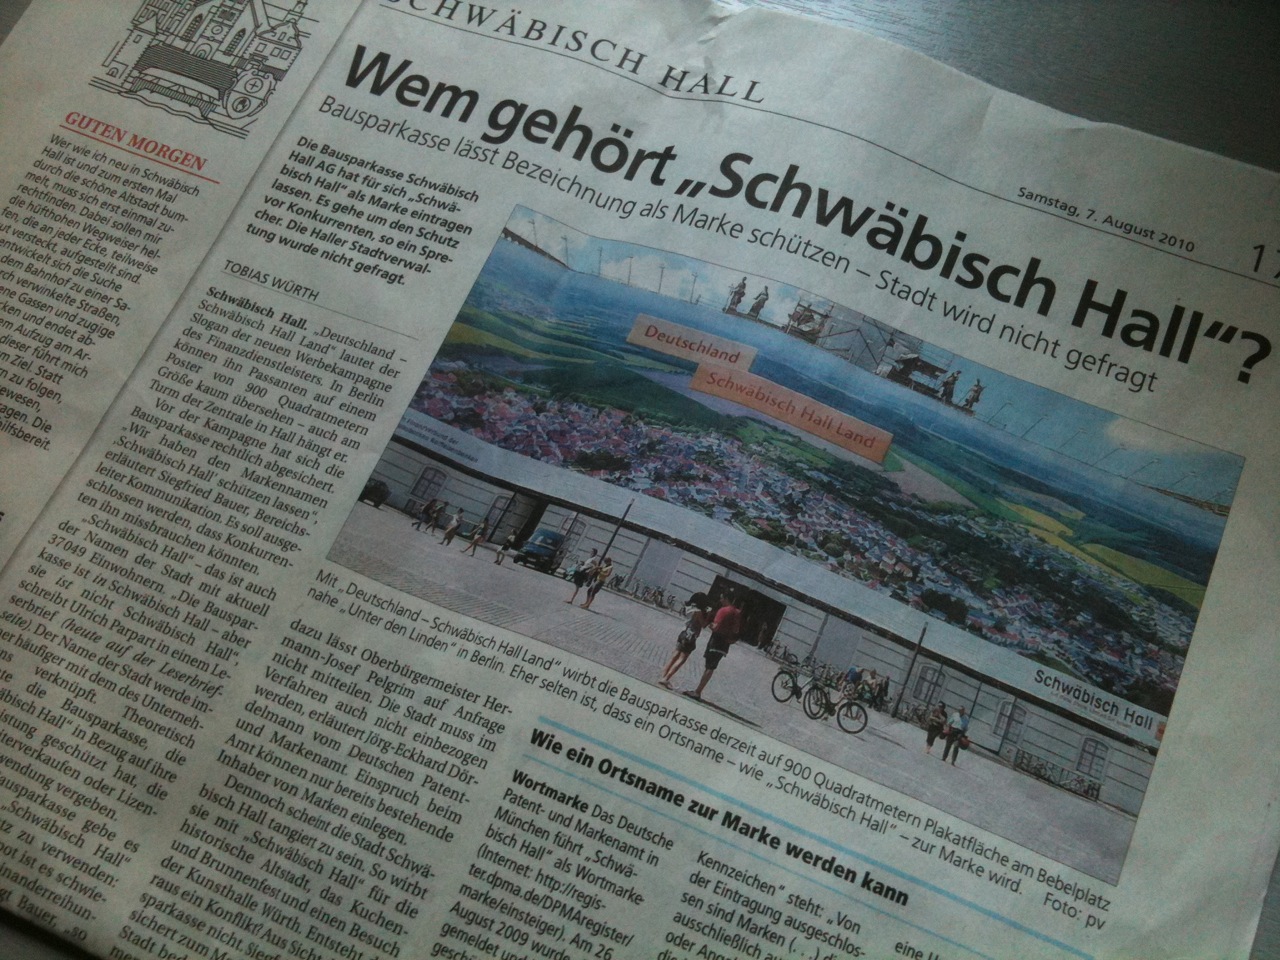 Titelseite des Lokalteils des Hallertagblatt vom 08. August 2010